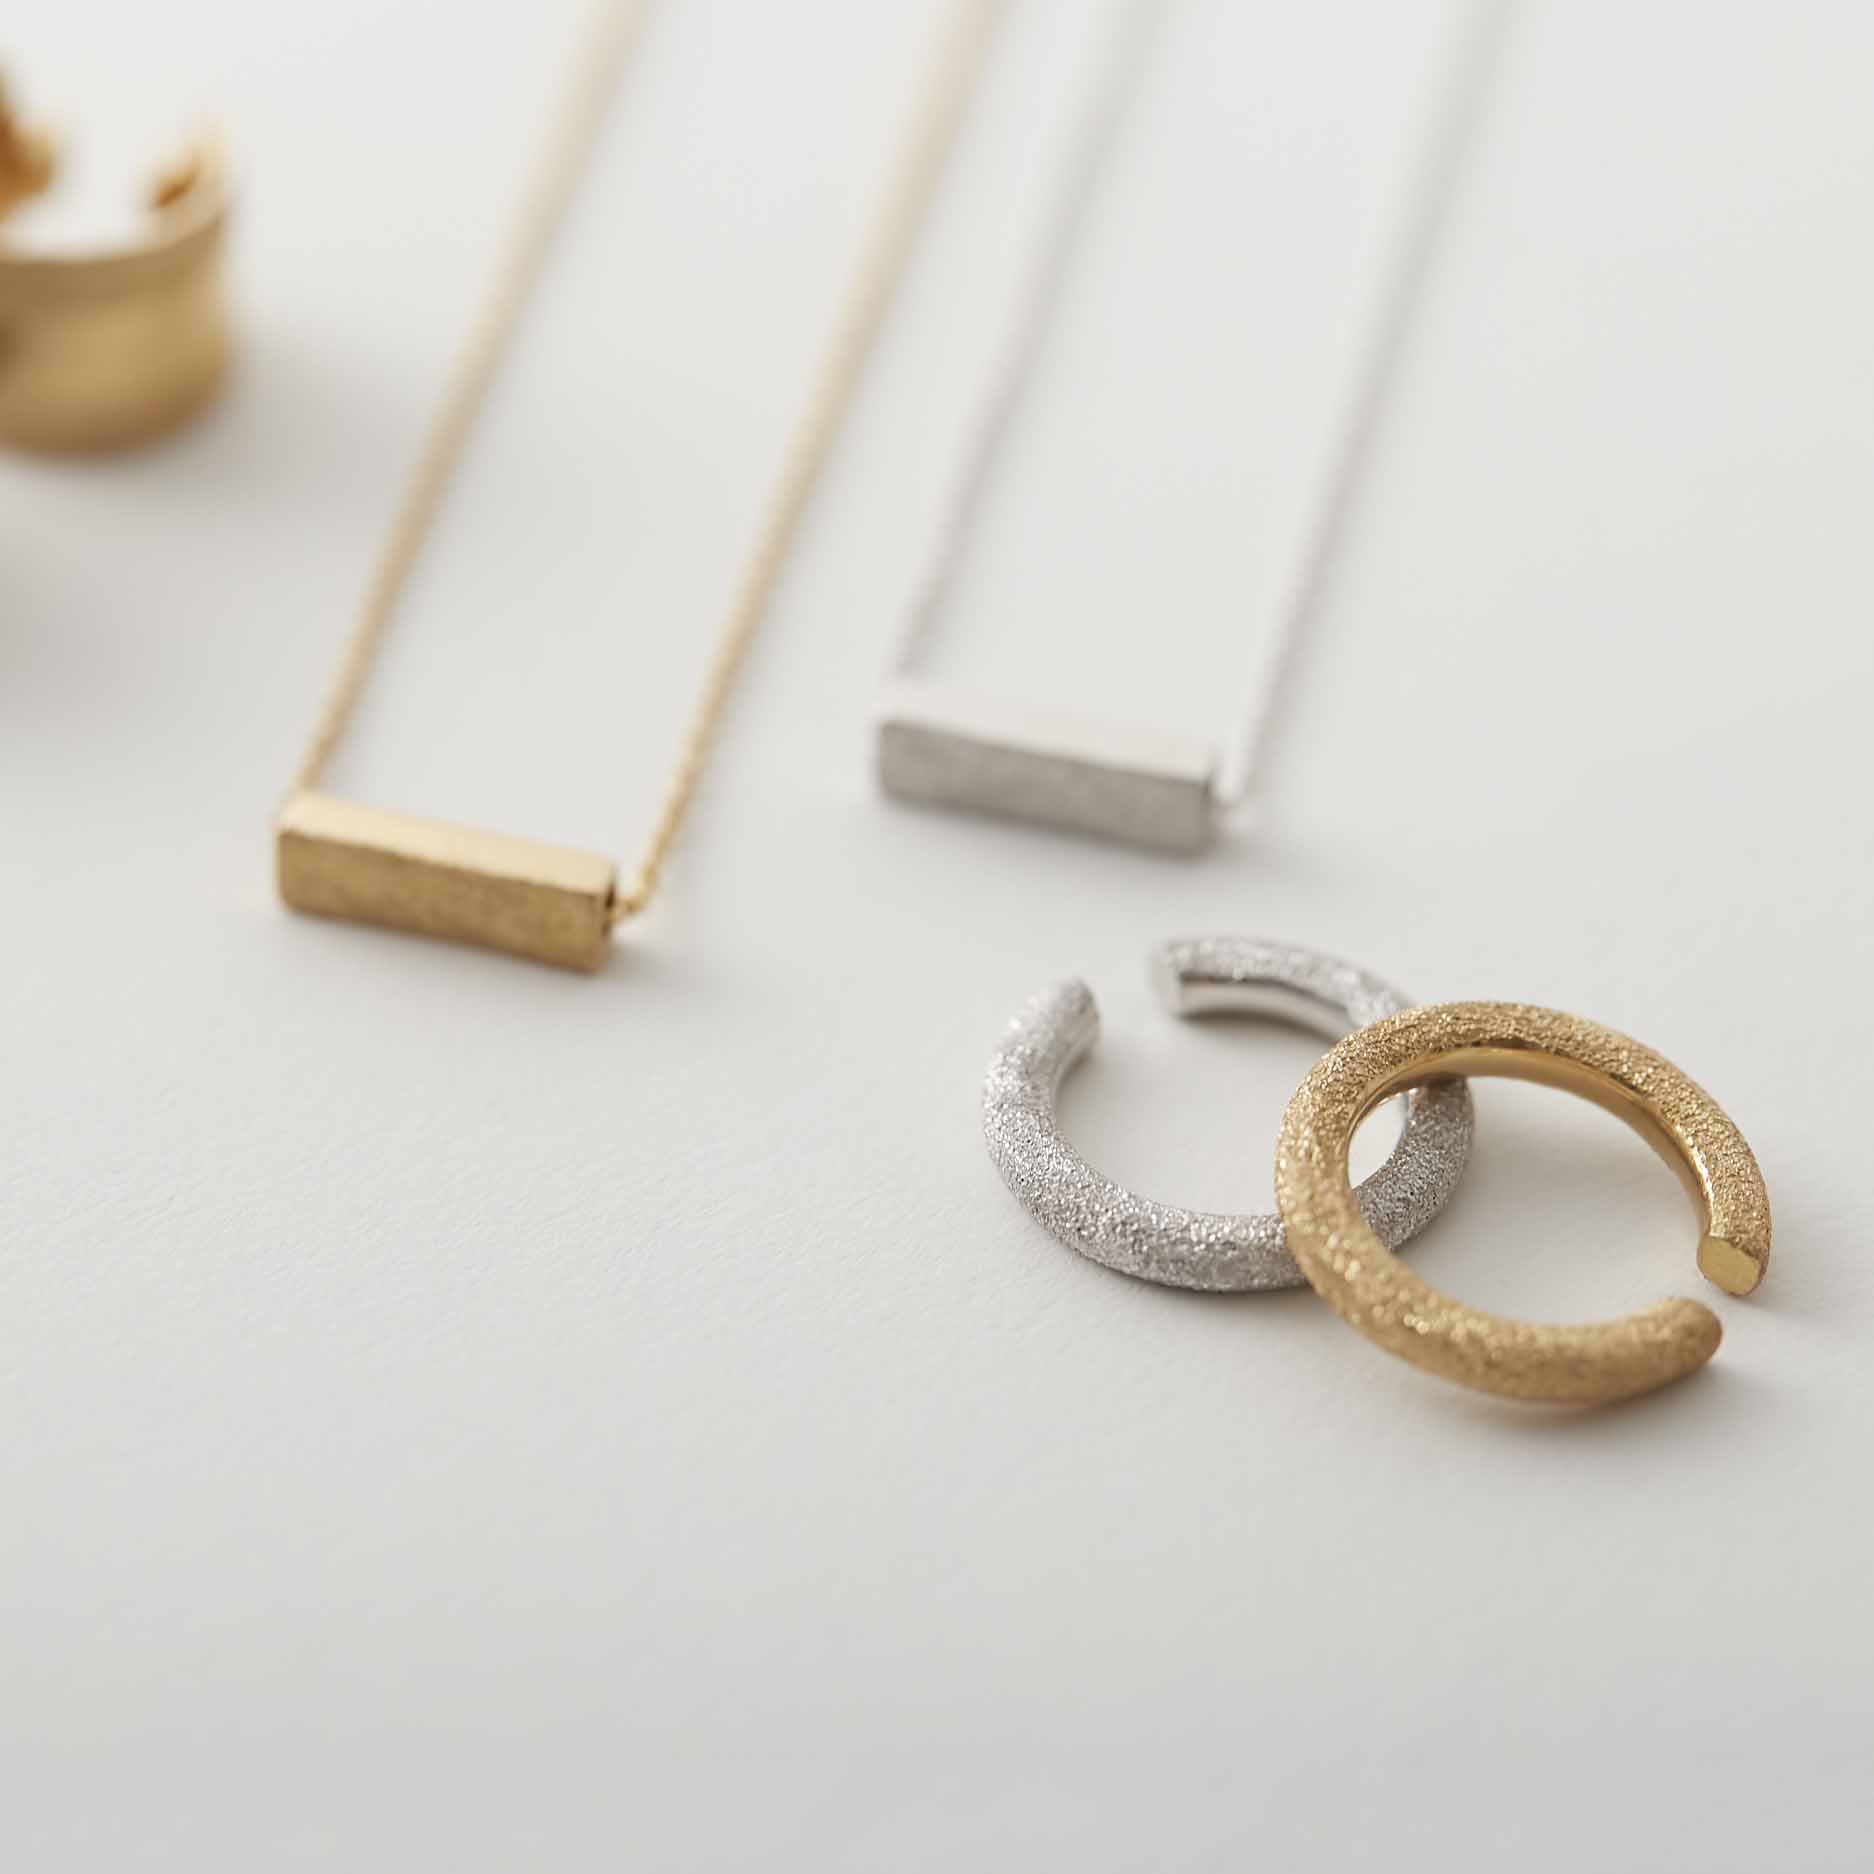 hatsuyume   jewelry & objects/diamond dust ring-earcuff